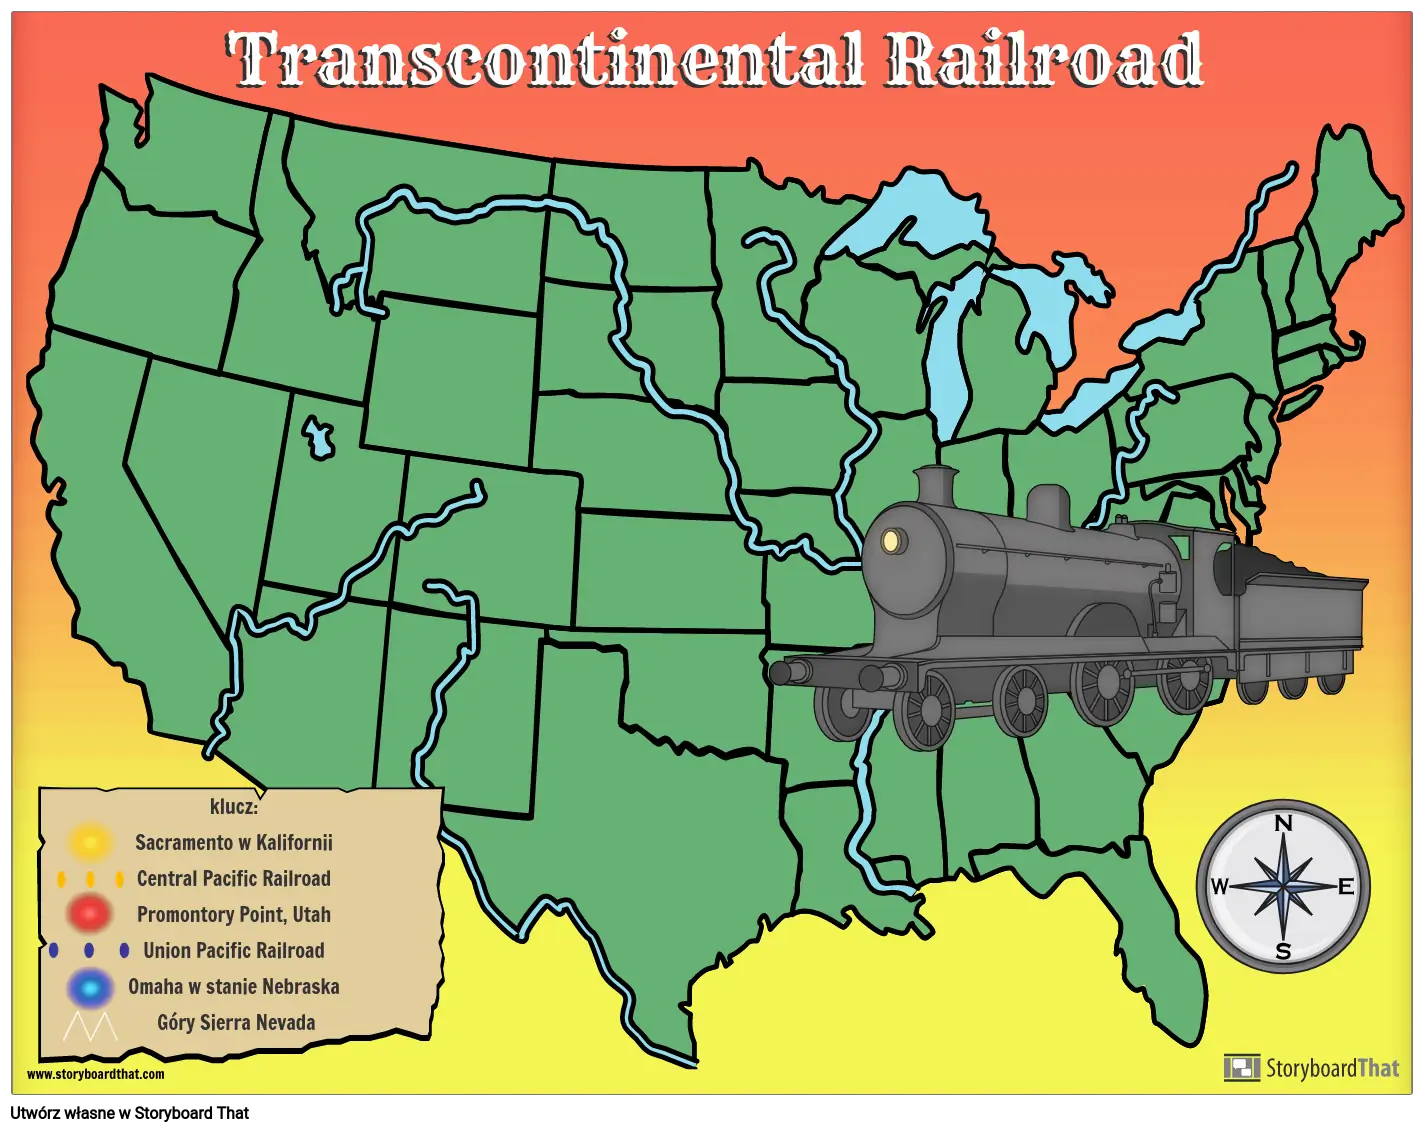 Szablon mapy transkontynentalnej kolei z symbolami